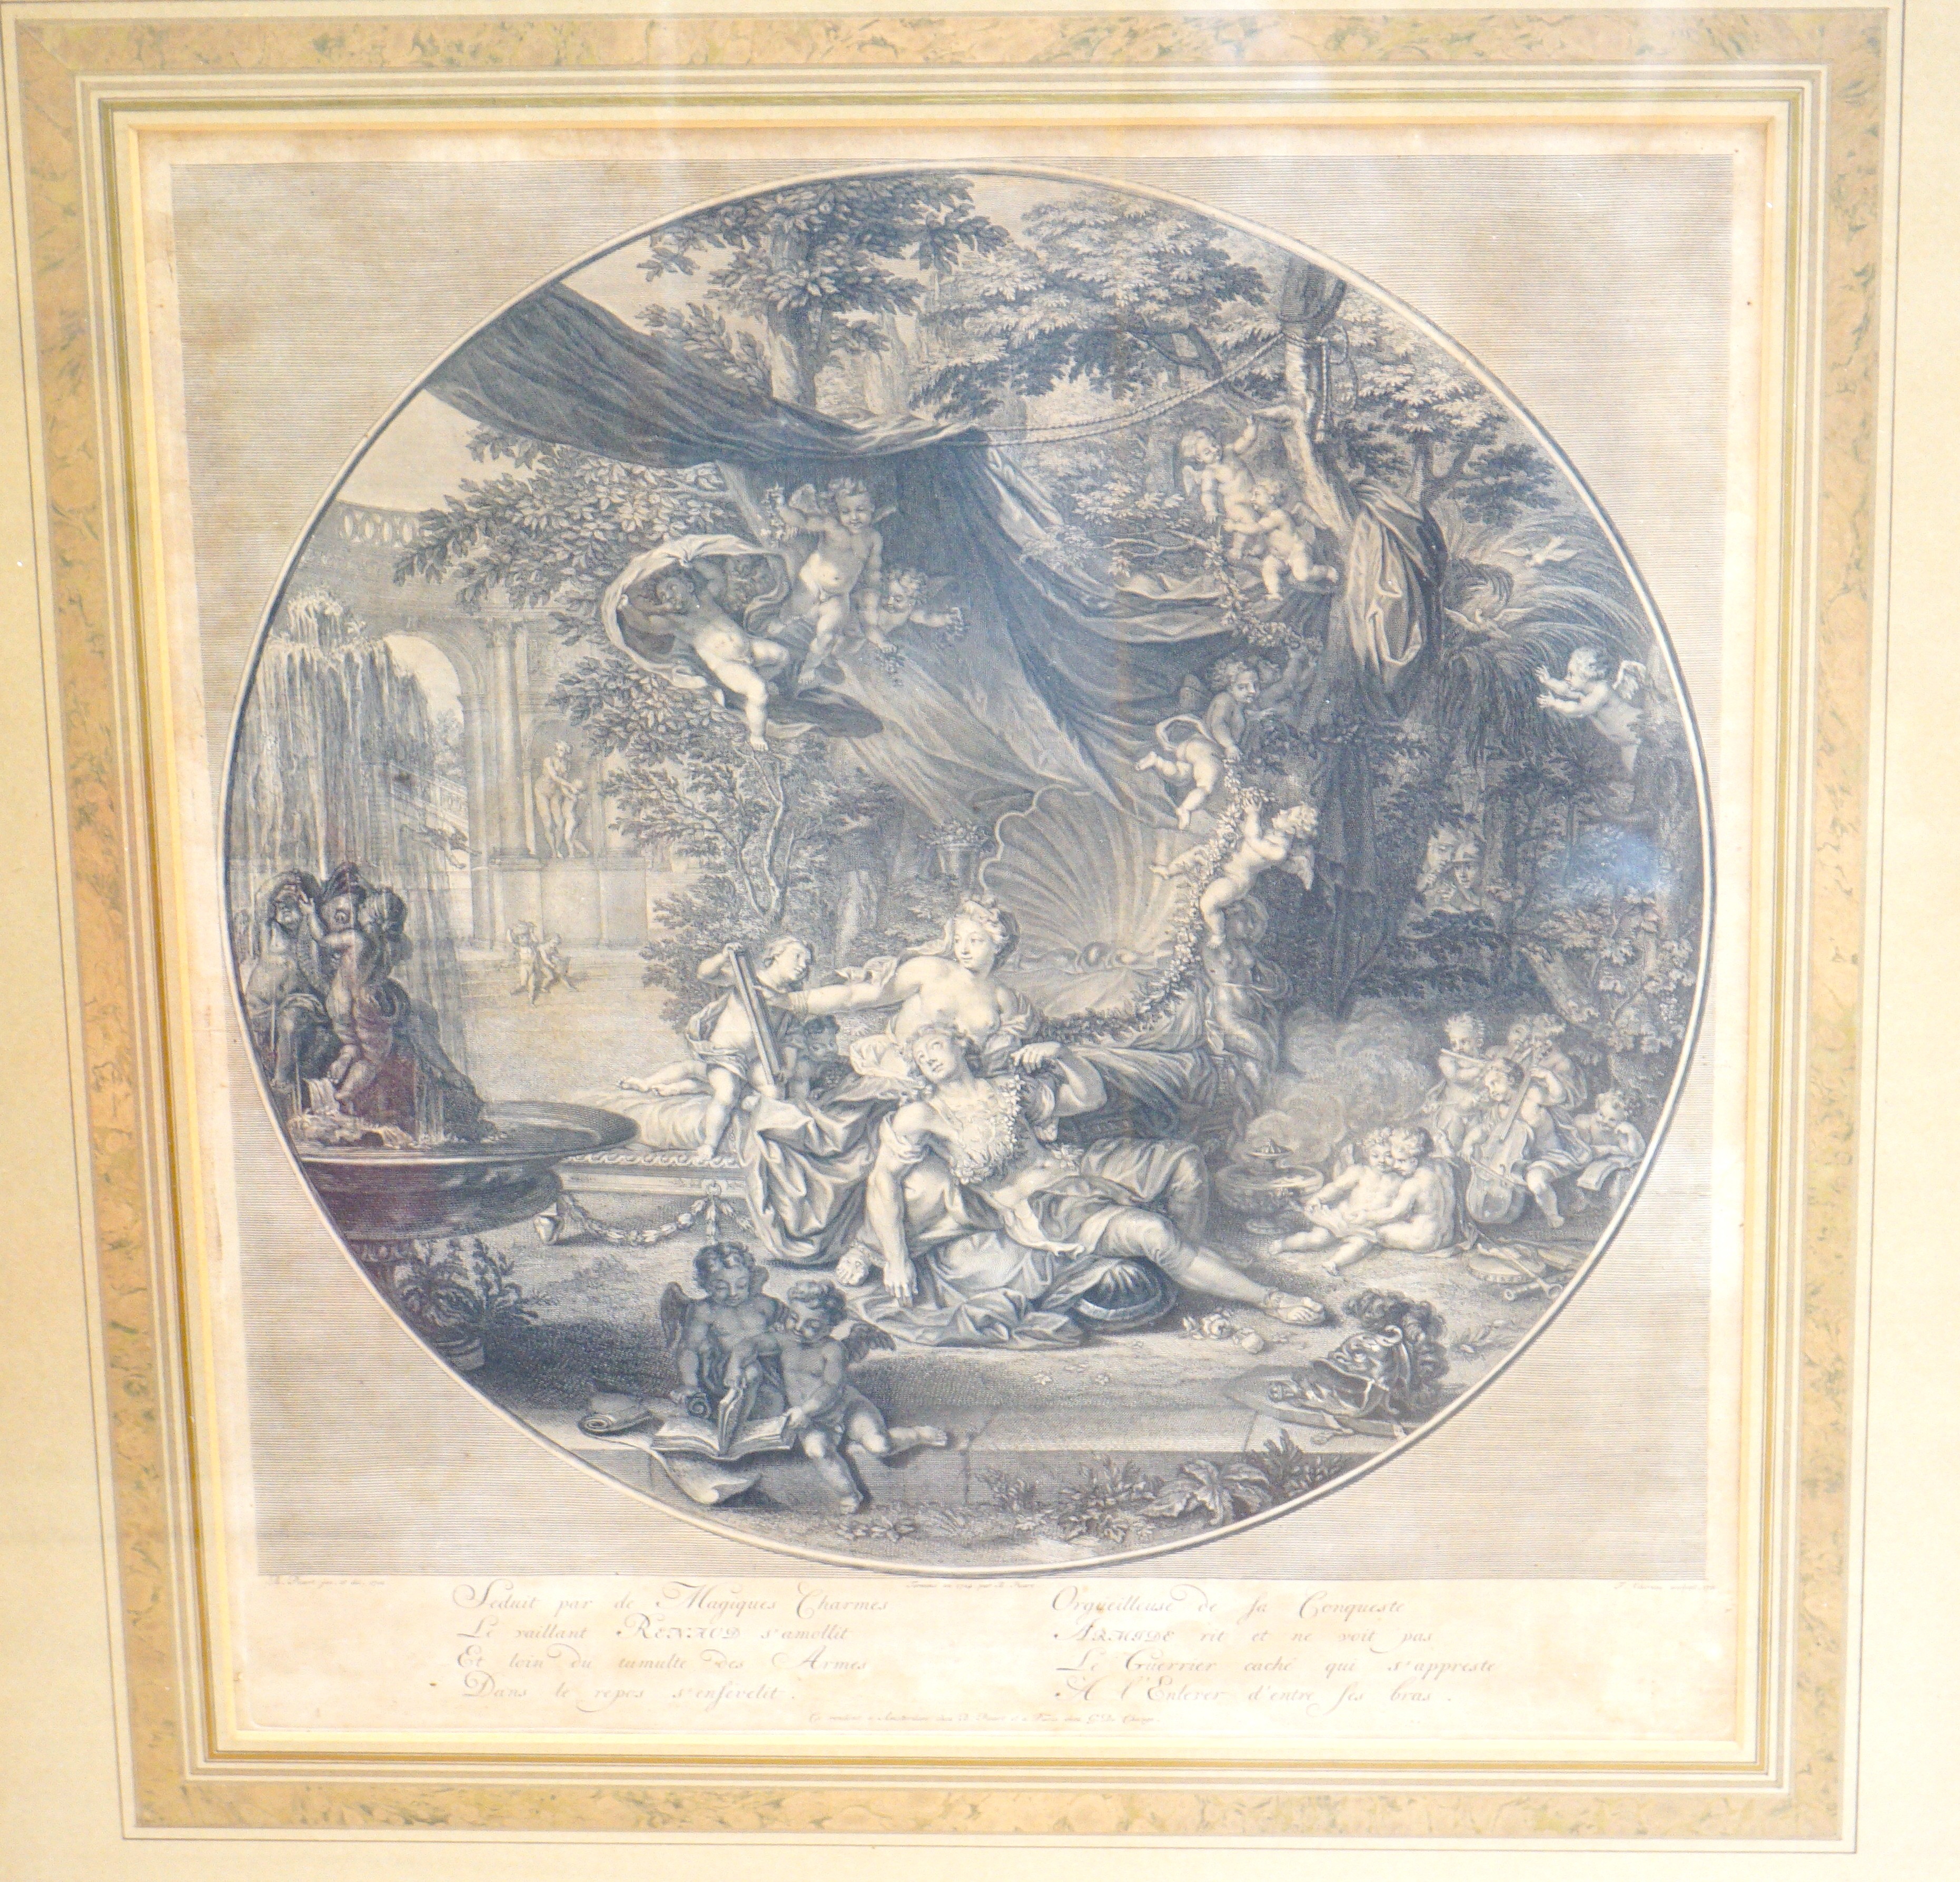 Chereau after Picart, engraving, 'Orgueilleuse de la Conqueste', 49 x 45cm, an engraving after Claude Lorrain, 'Sun setting', and an engraving of children, 36 x 48cm